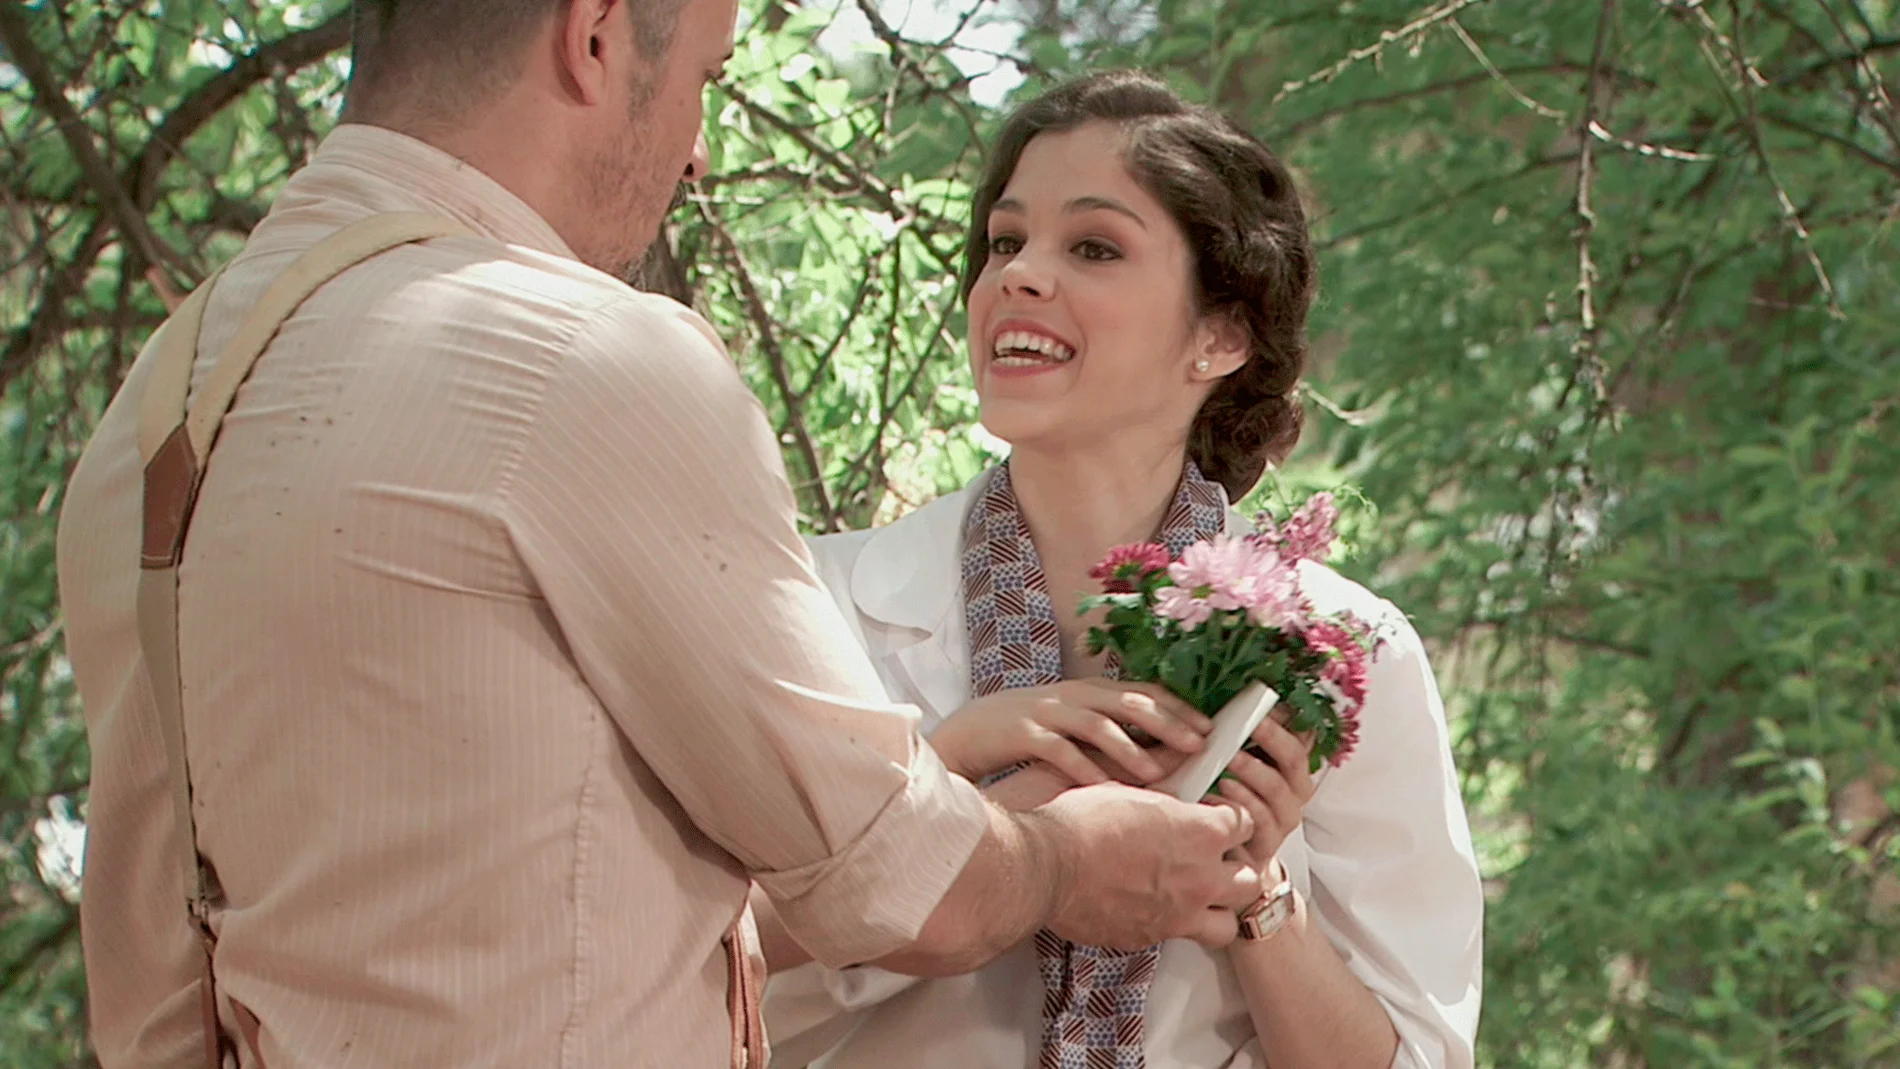 Alfonso regala flores a Hortensia